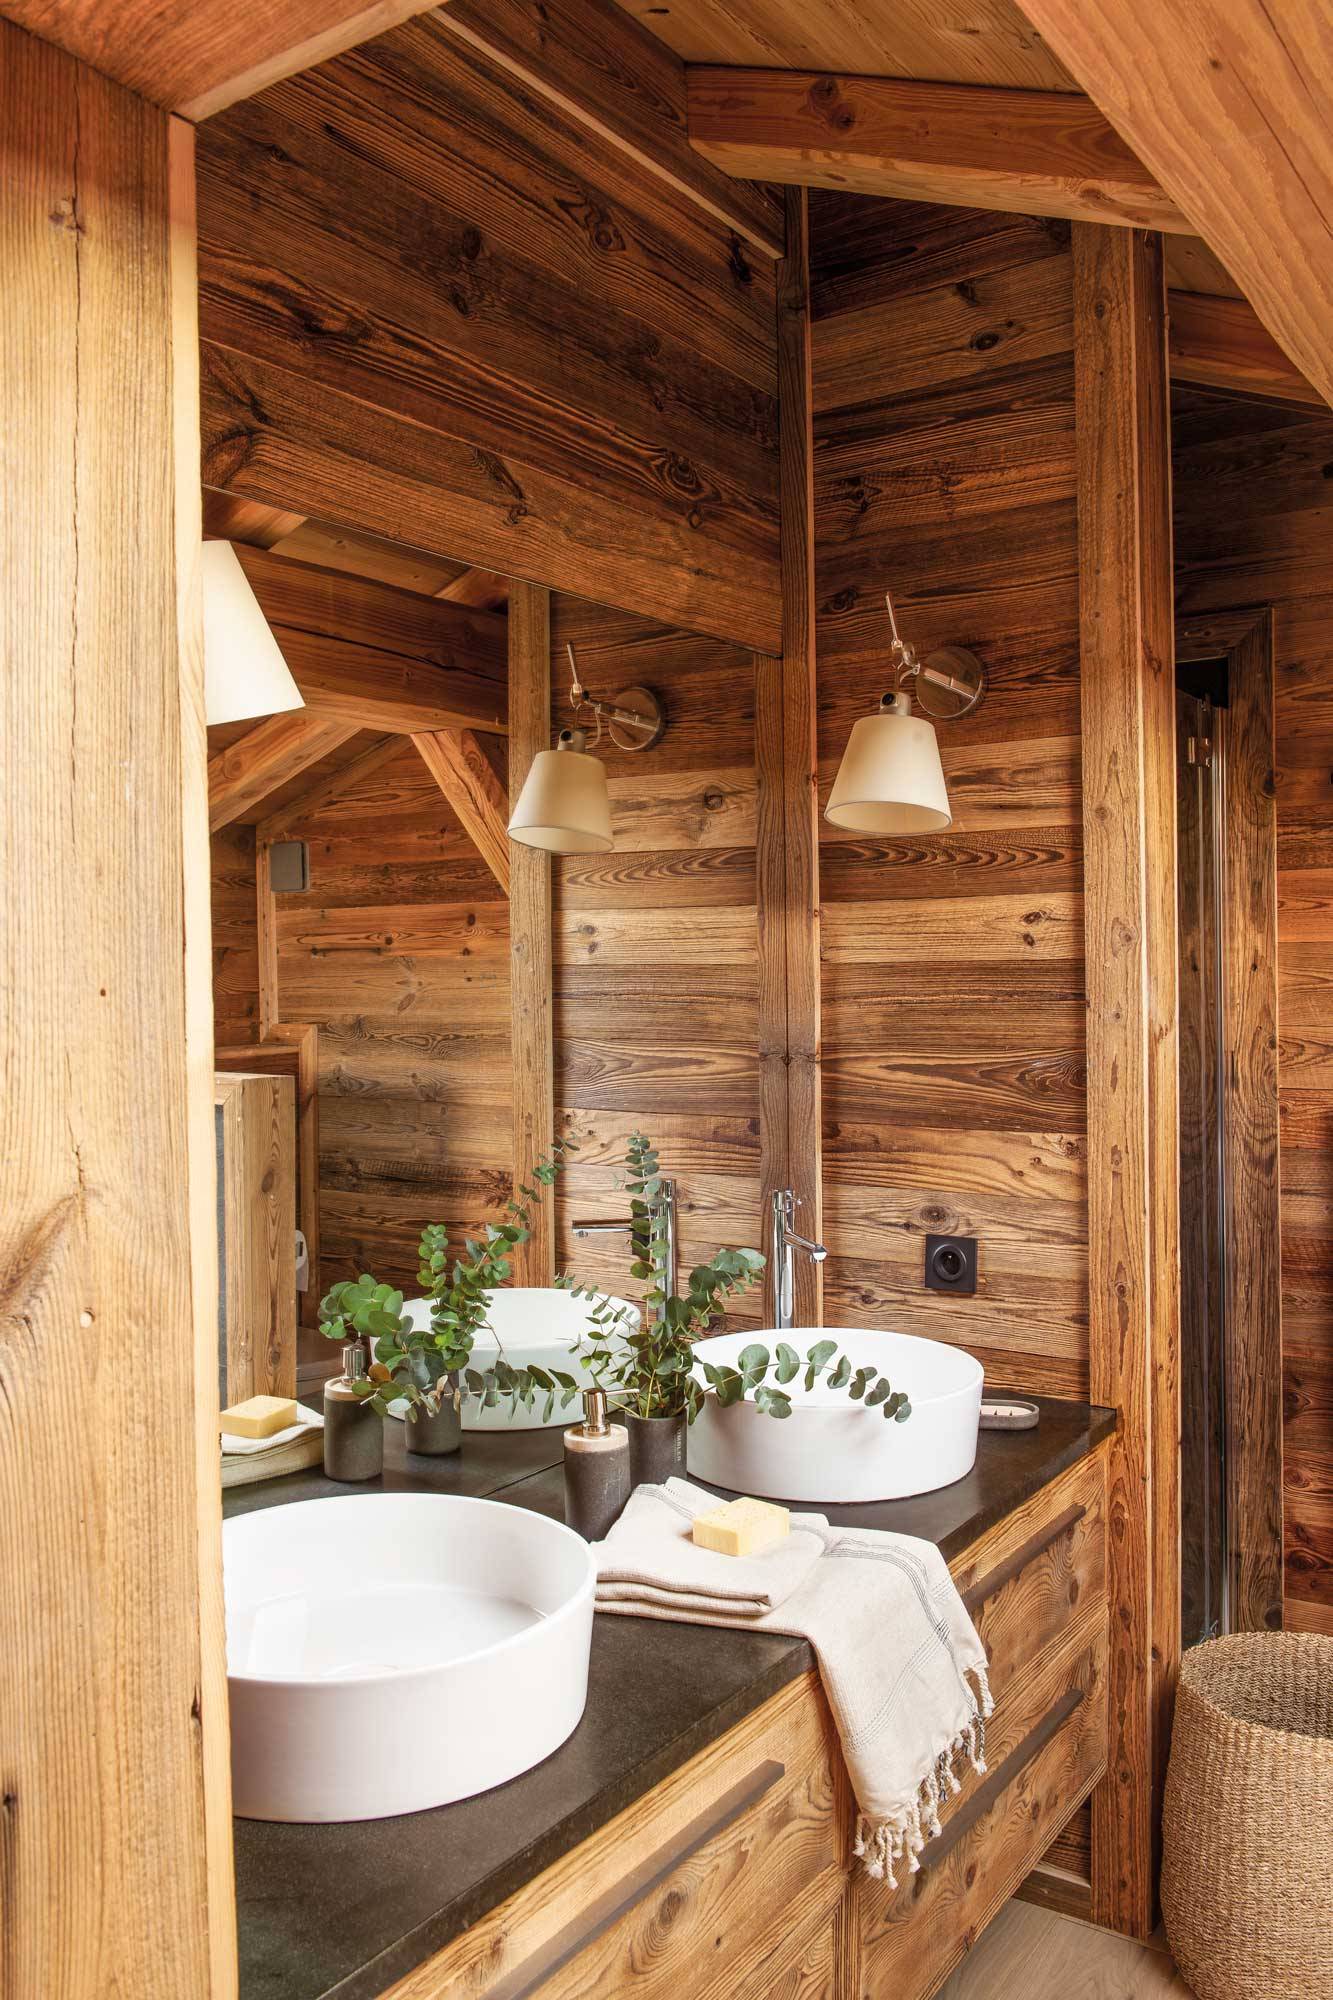 Baño rústico con mobiliario y revestimientos de madera 00517205